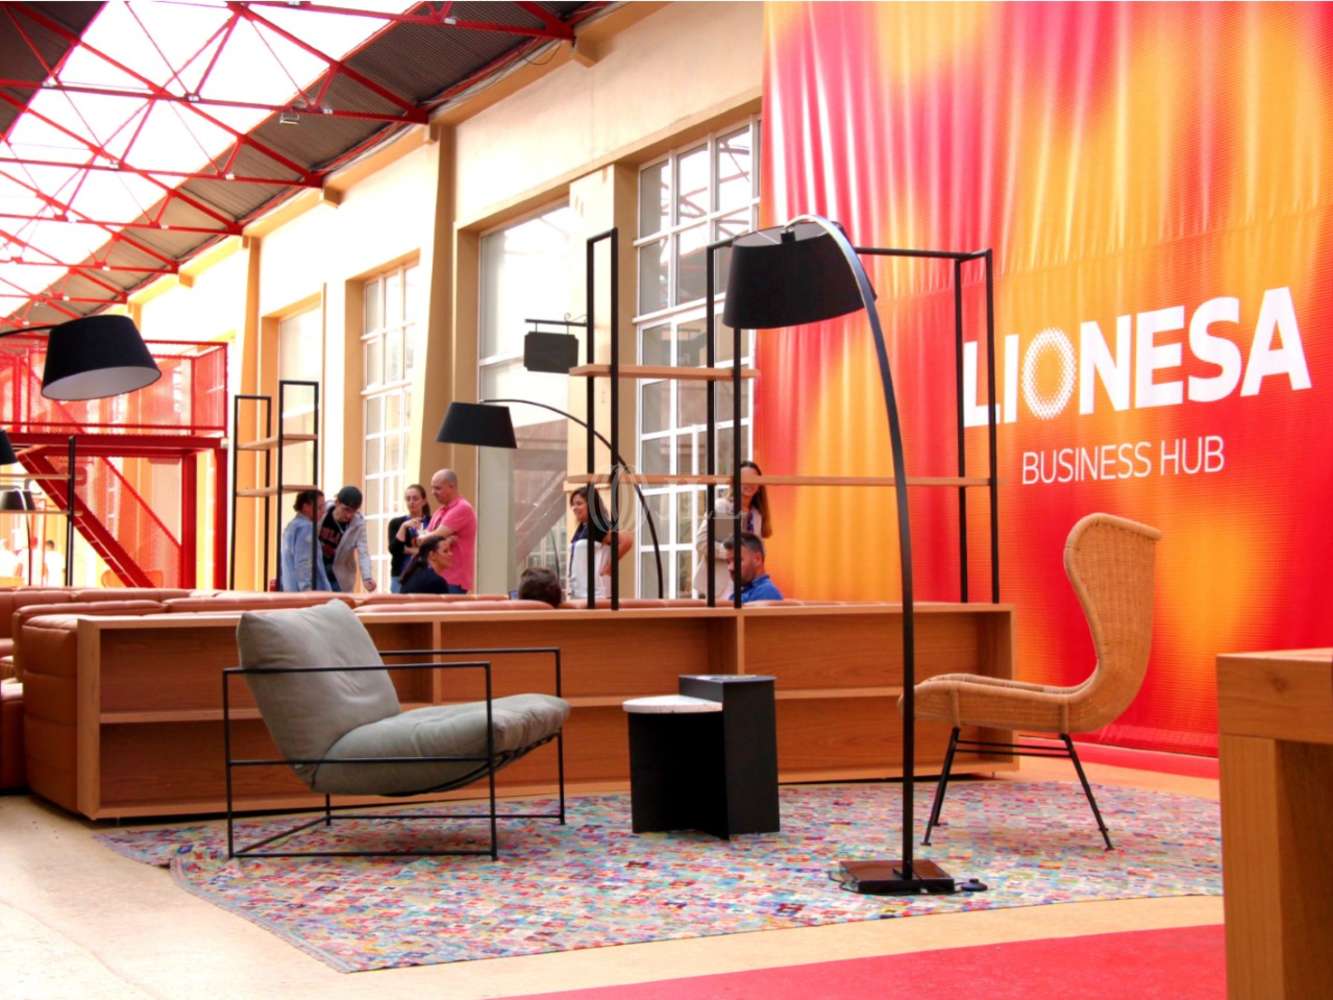 Office Matosinhos - Lionesa Business Hub